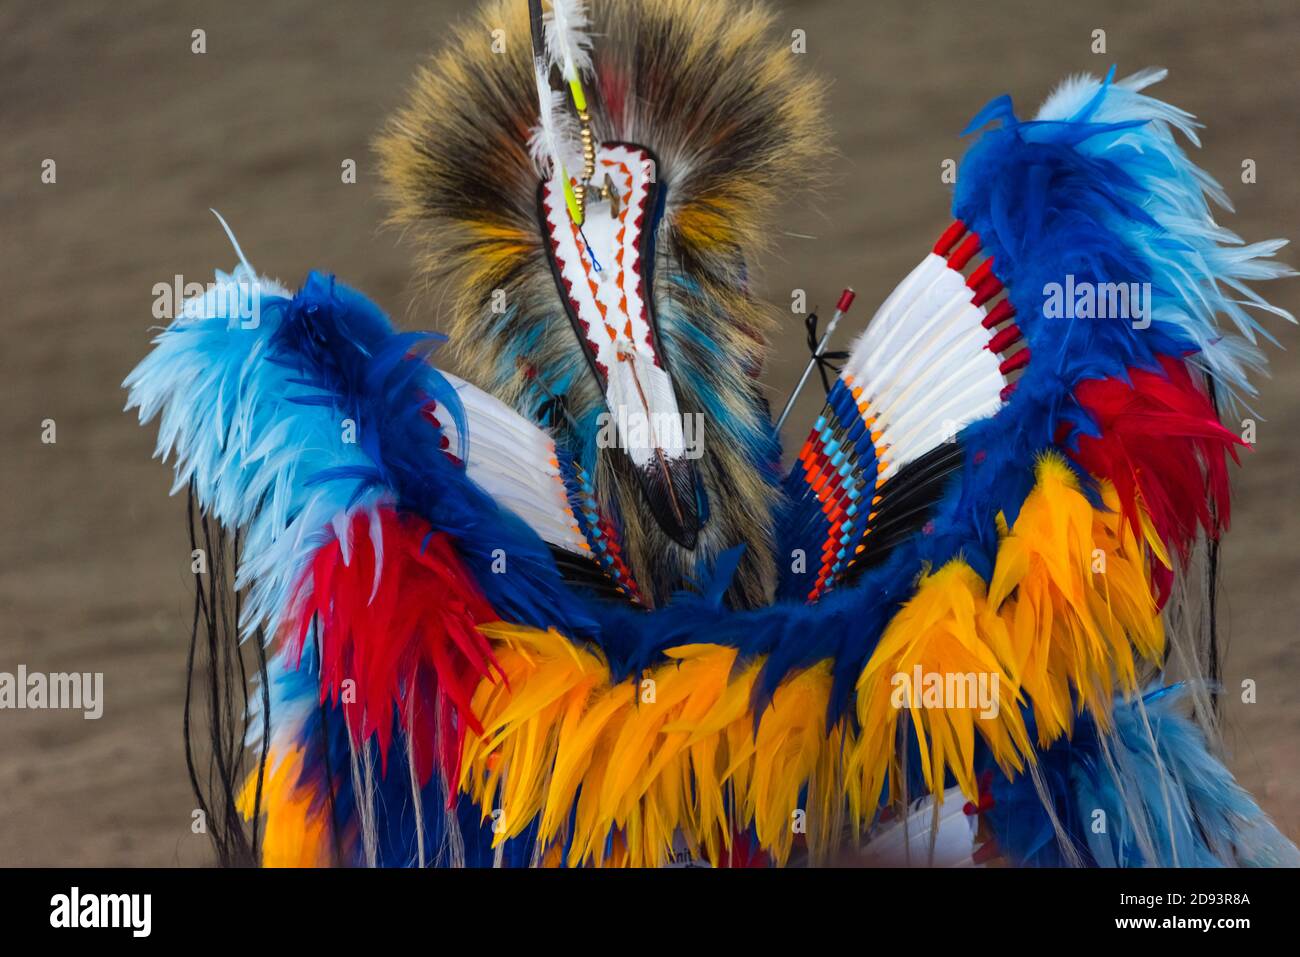 Garçon amérindien portant des vêtements traditionnels, Omak, État de Washington, États-Unis Banque D'Images